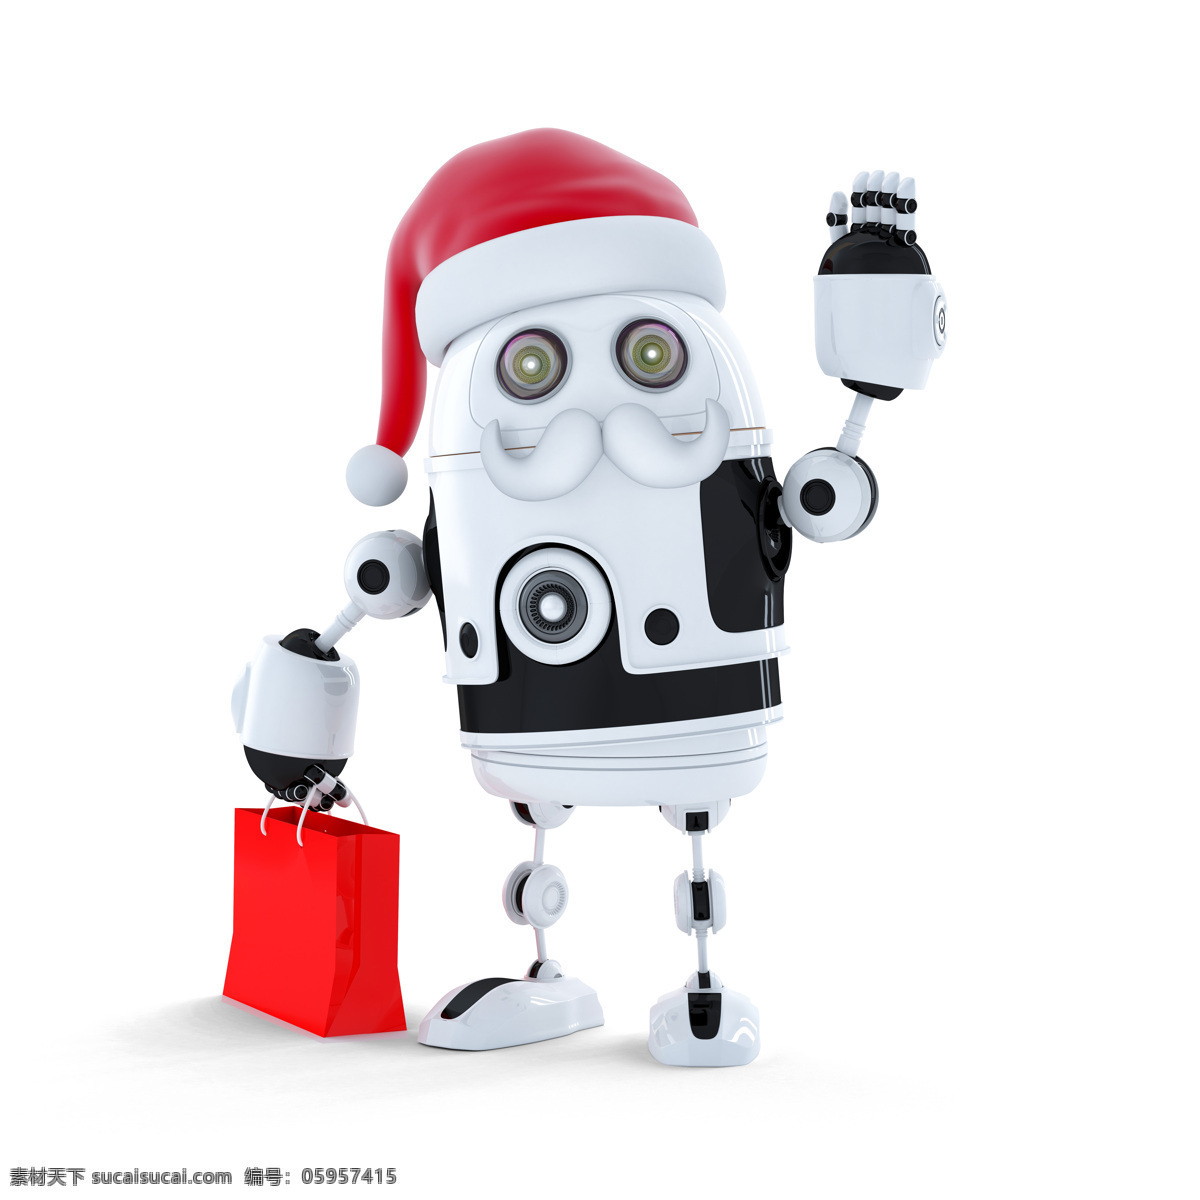 圣诞机器人 帽子 购物袋 机器人 圣诞节 节日素材 圣诞主题 节日庆典 生活百科 白色